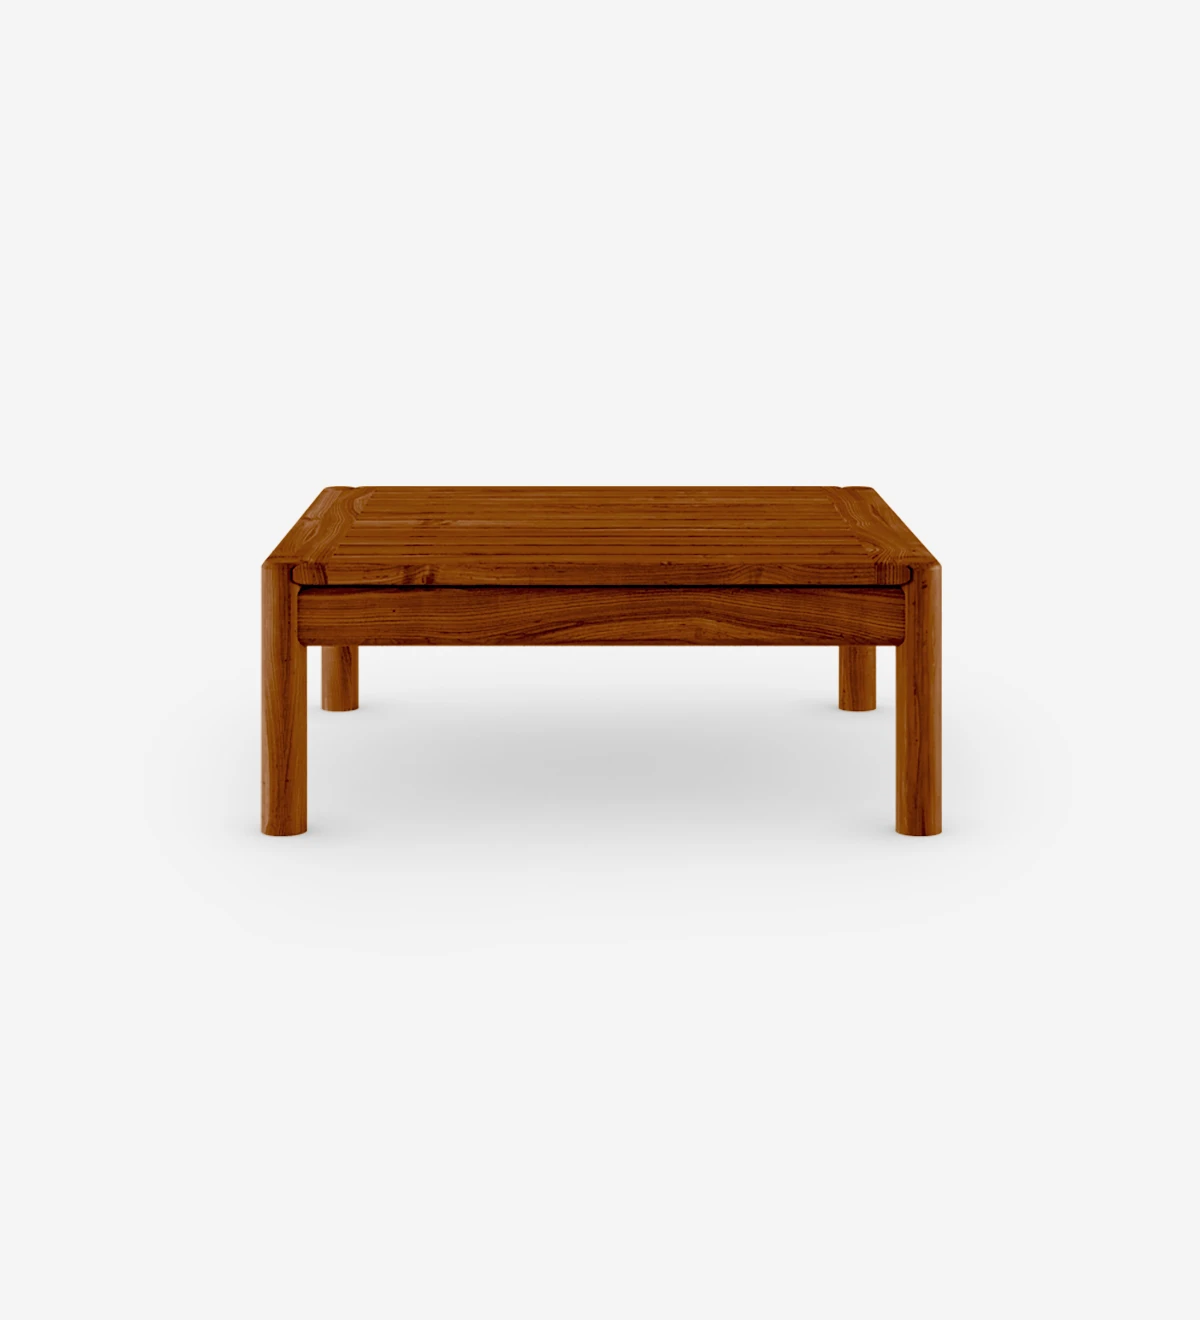 Table basse carrée en bois naturel couleur miel.